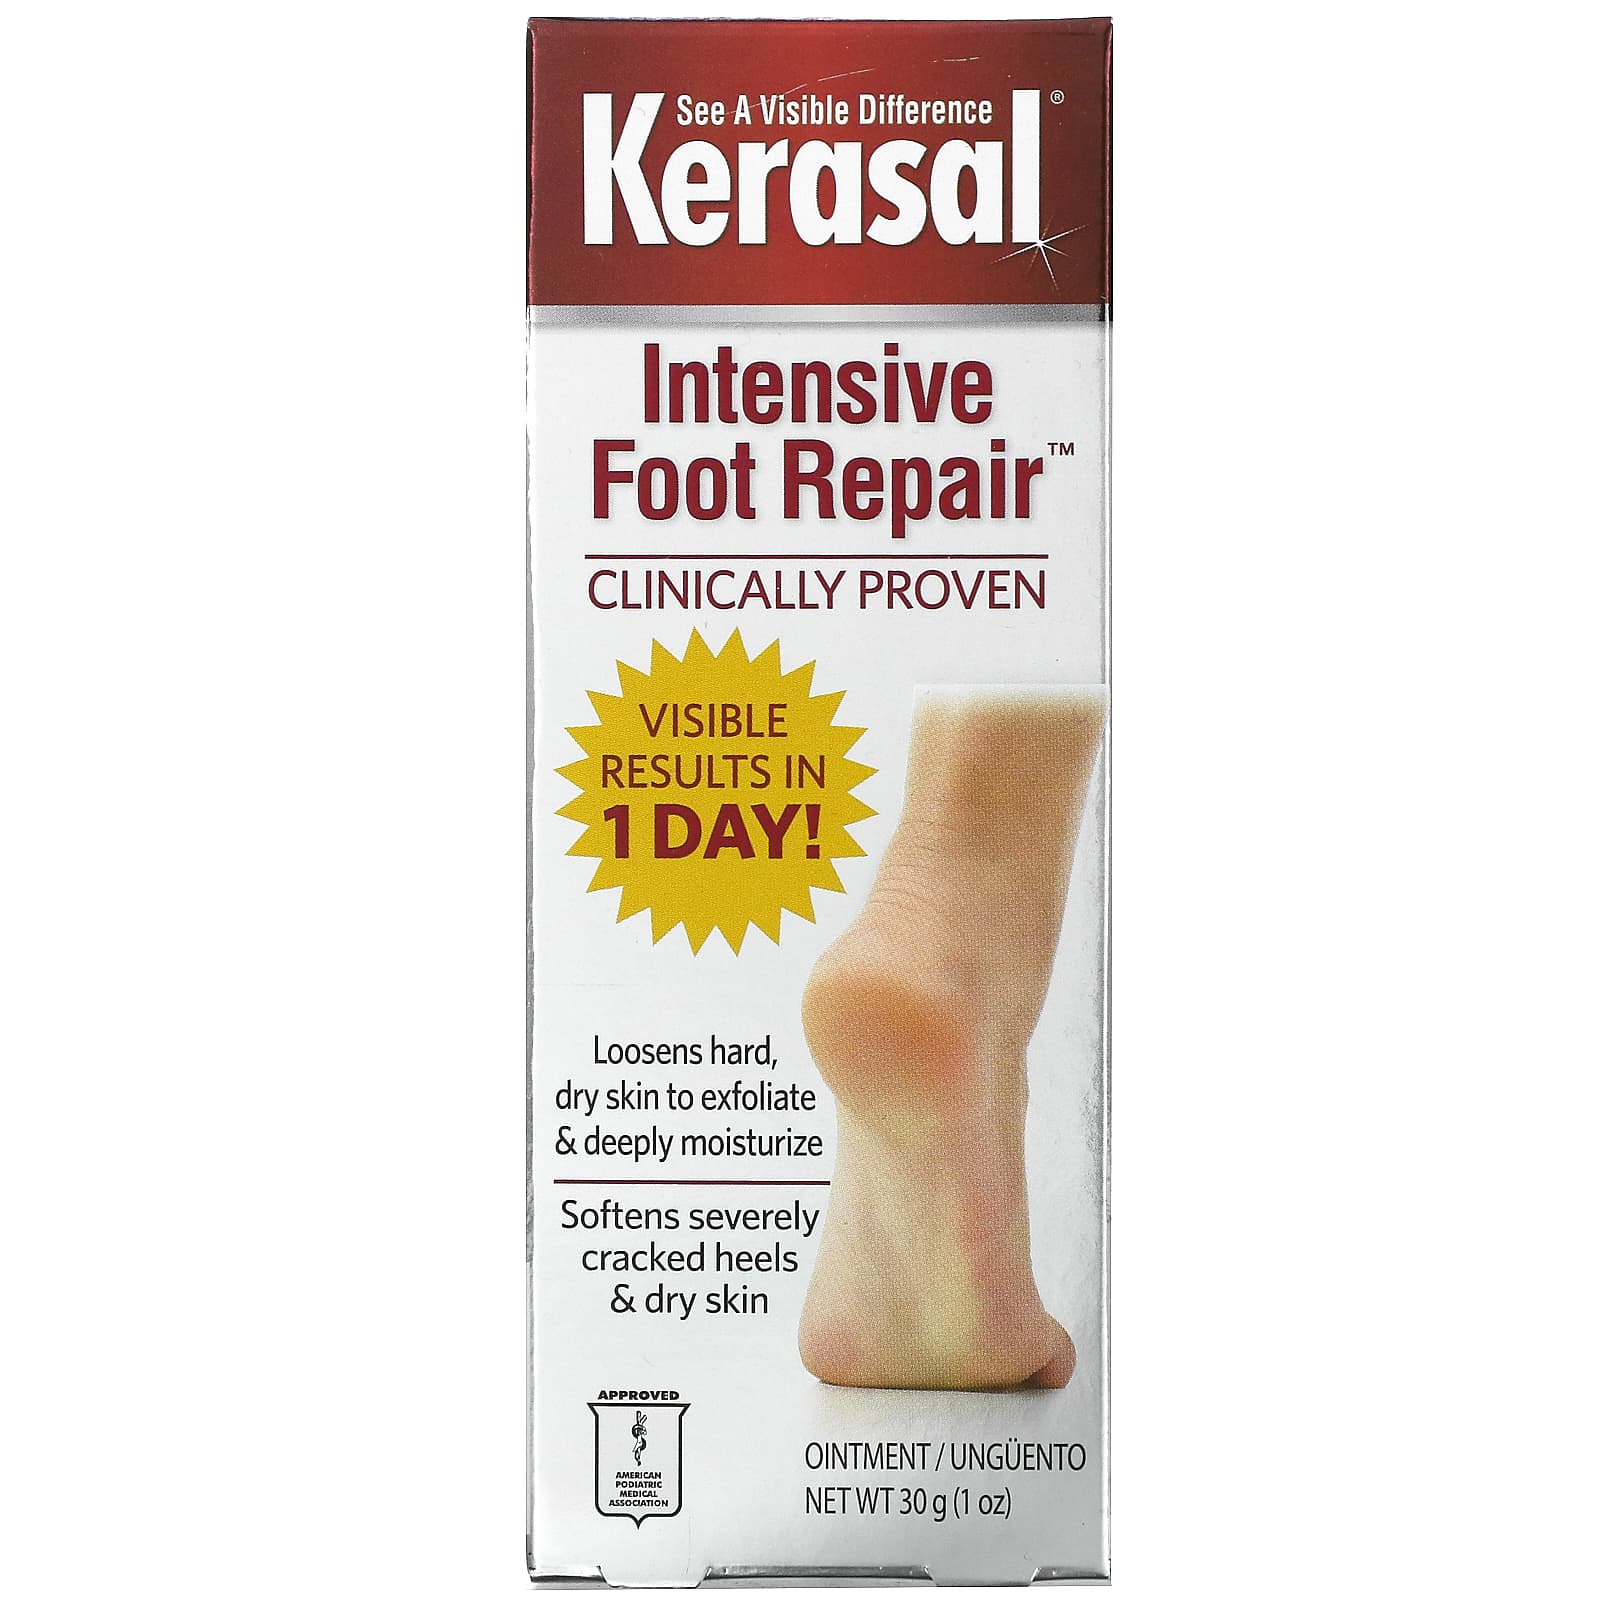 Kerasal Intensive Foot Repair мазь для интенсивного восстановления кожи стоп 30 г (1 унция)